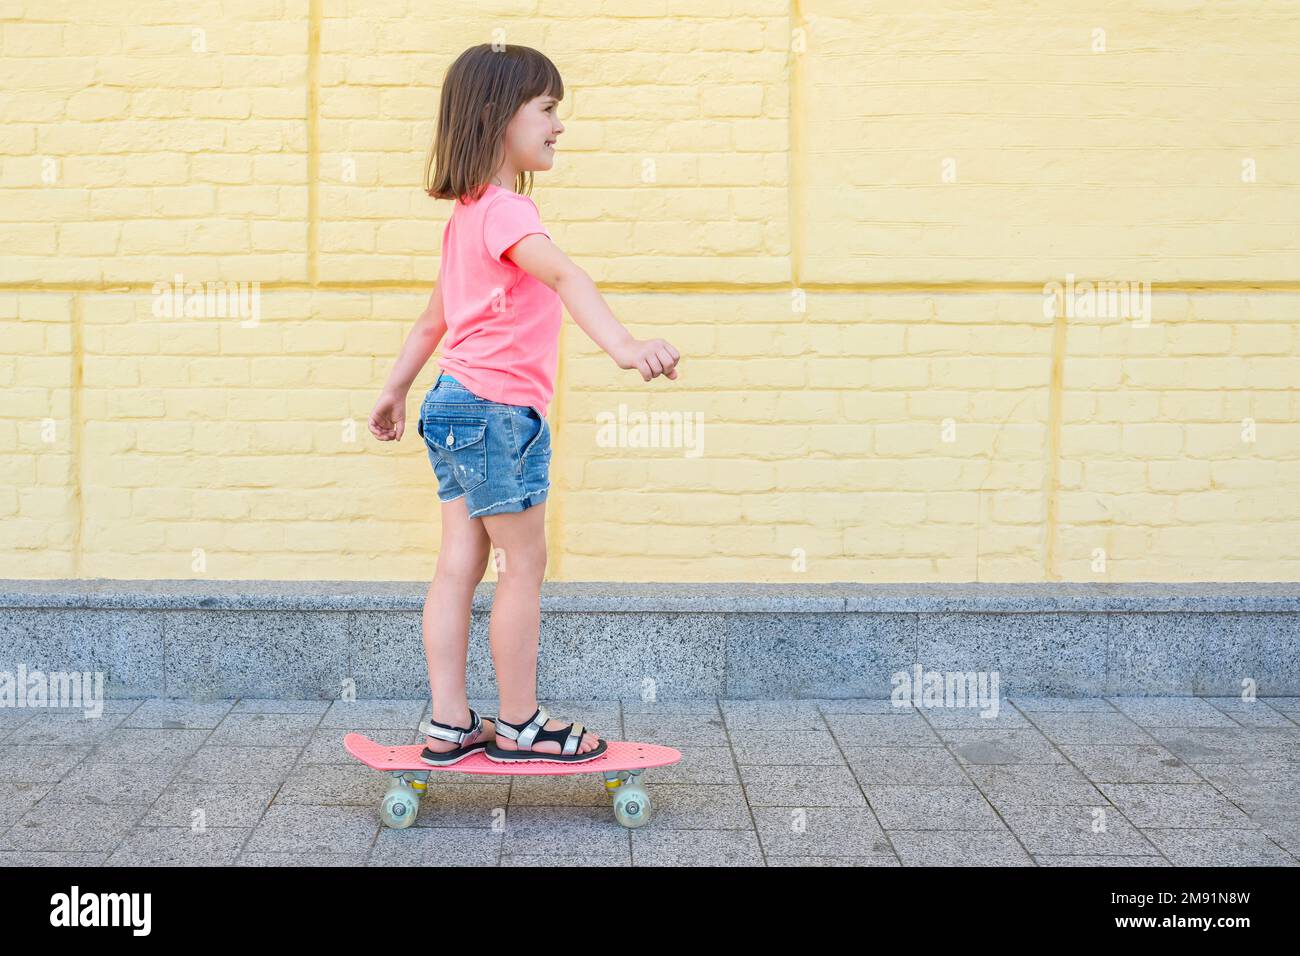 Una niña de 7 a 8 años en una camiseta rosa está patinando en el fondo amarillo de la pared. Estilo de vida Foto de stock